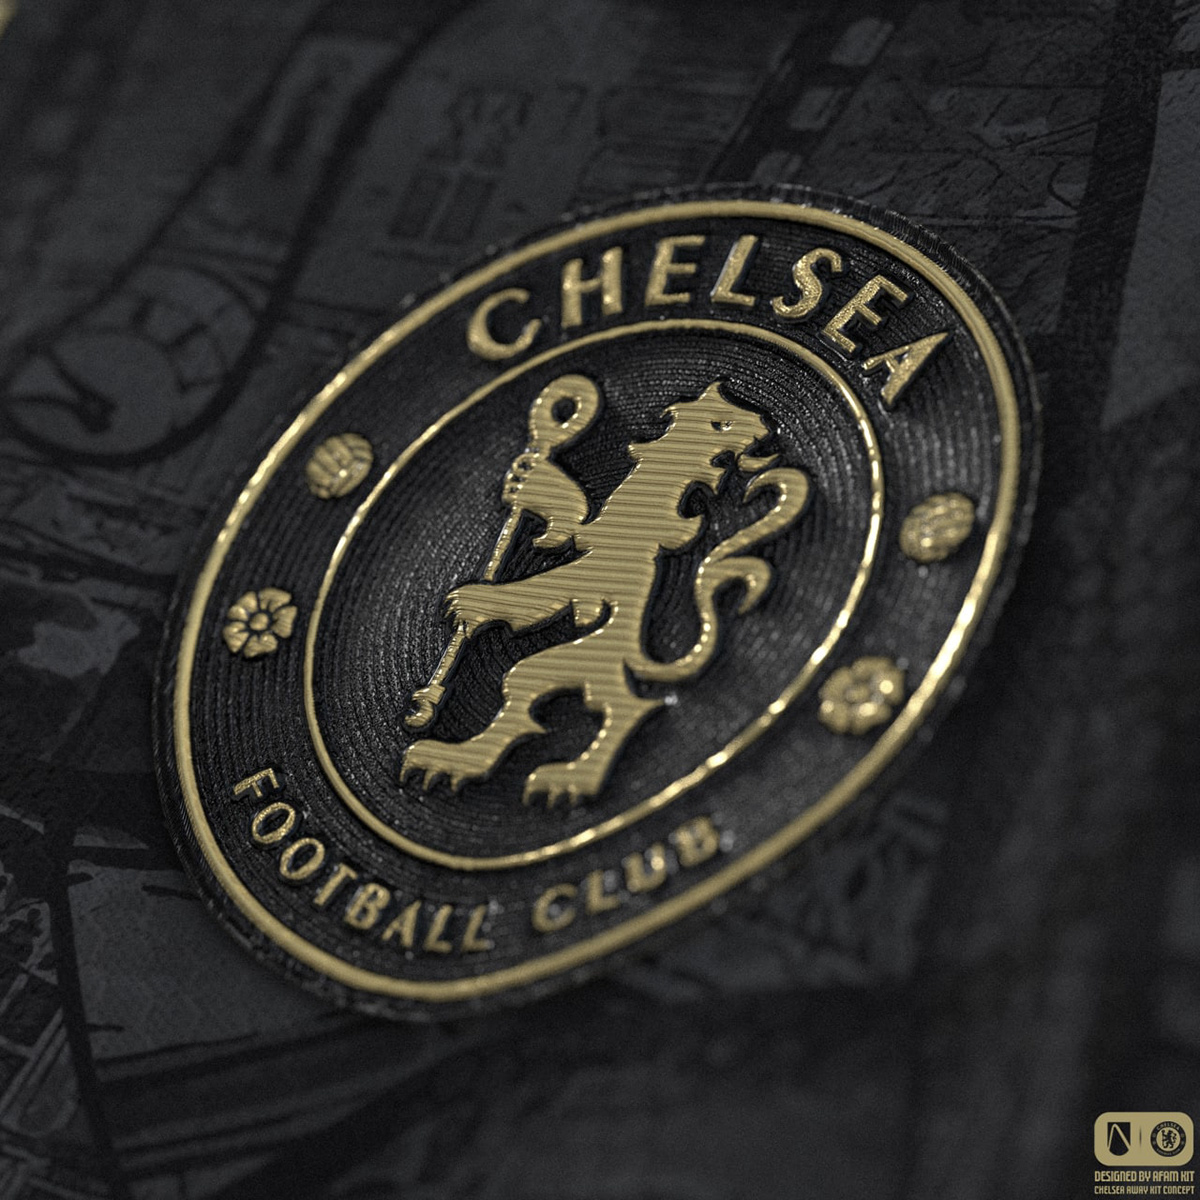 afam afamkit Chelsea chelseafc London Premier League